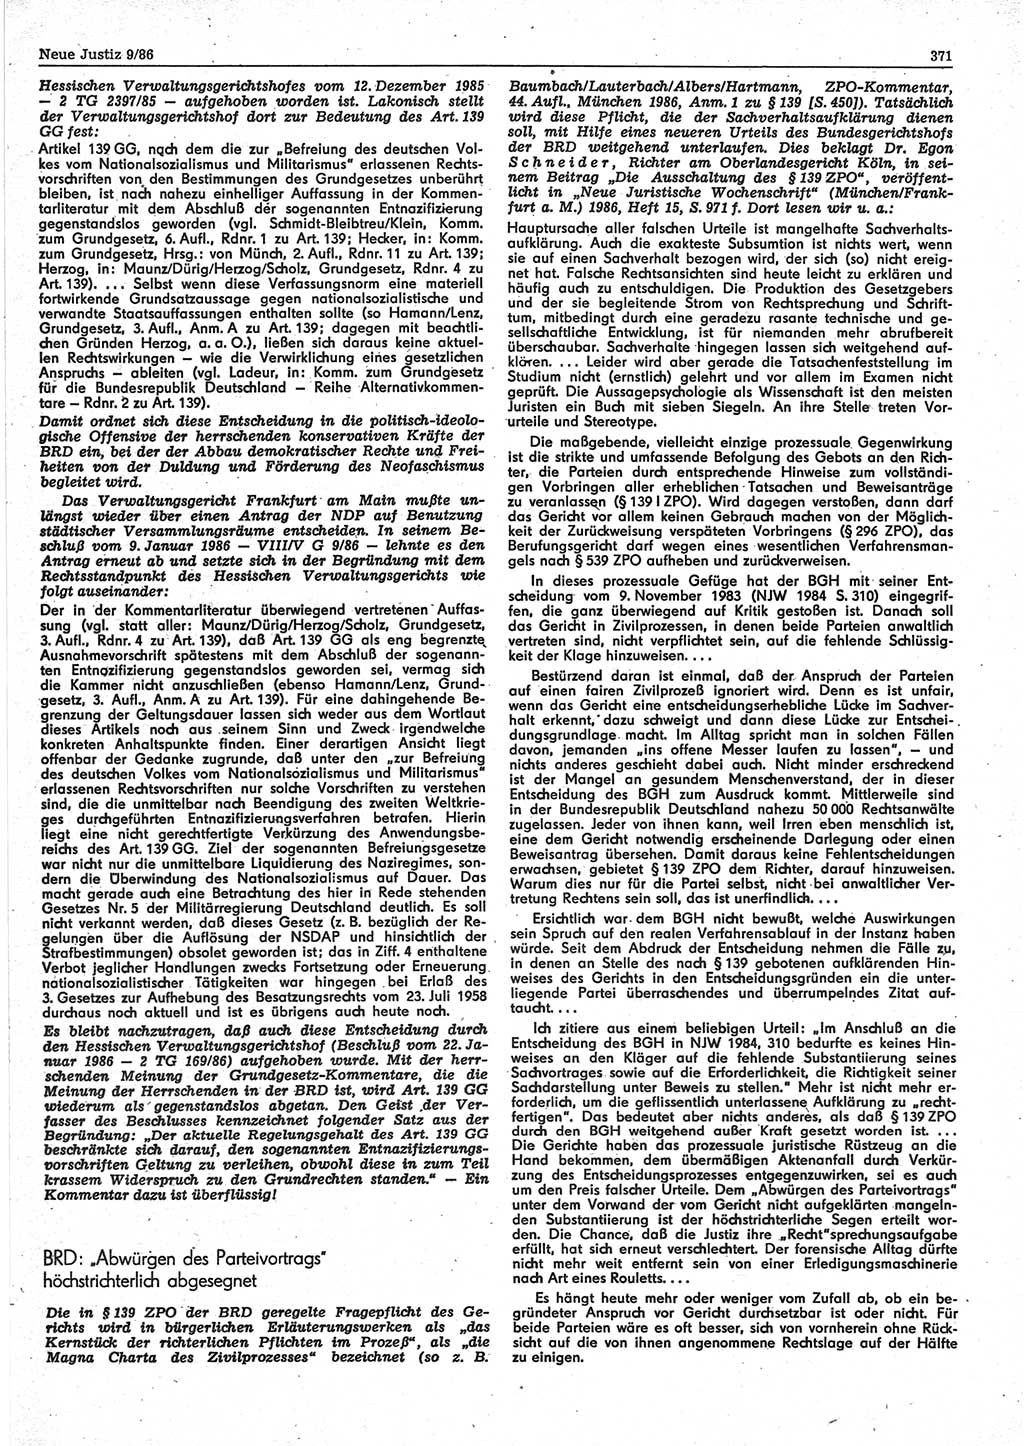 Neue Justiz (NJ), Zeitschrift für sozialistisches Recht und Gesetzlichkeit [Deutsche Demokratische Republik (DDR)], 40. Jahrgang 1986, Seite 371 (NJ DDR 1986, S. 371)